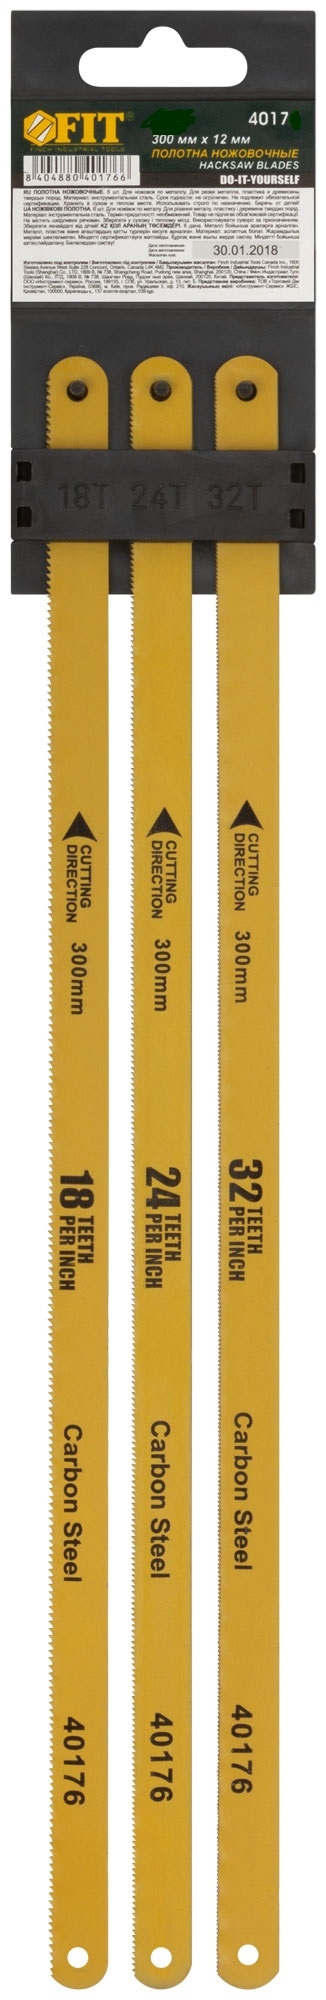 Полотна ножовочные по металлу, 300 мм, (18ТPI+24ТPI+32ТPI/20Cr ), 3 шт. FIT 40175 запасные полотна для ножовки по металлу truper